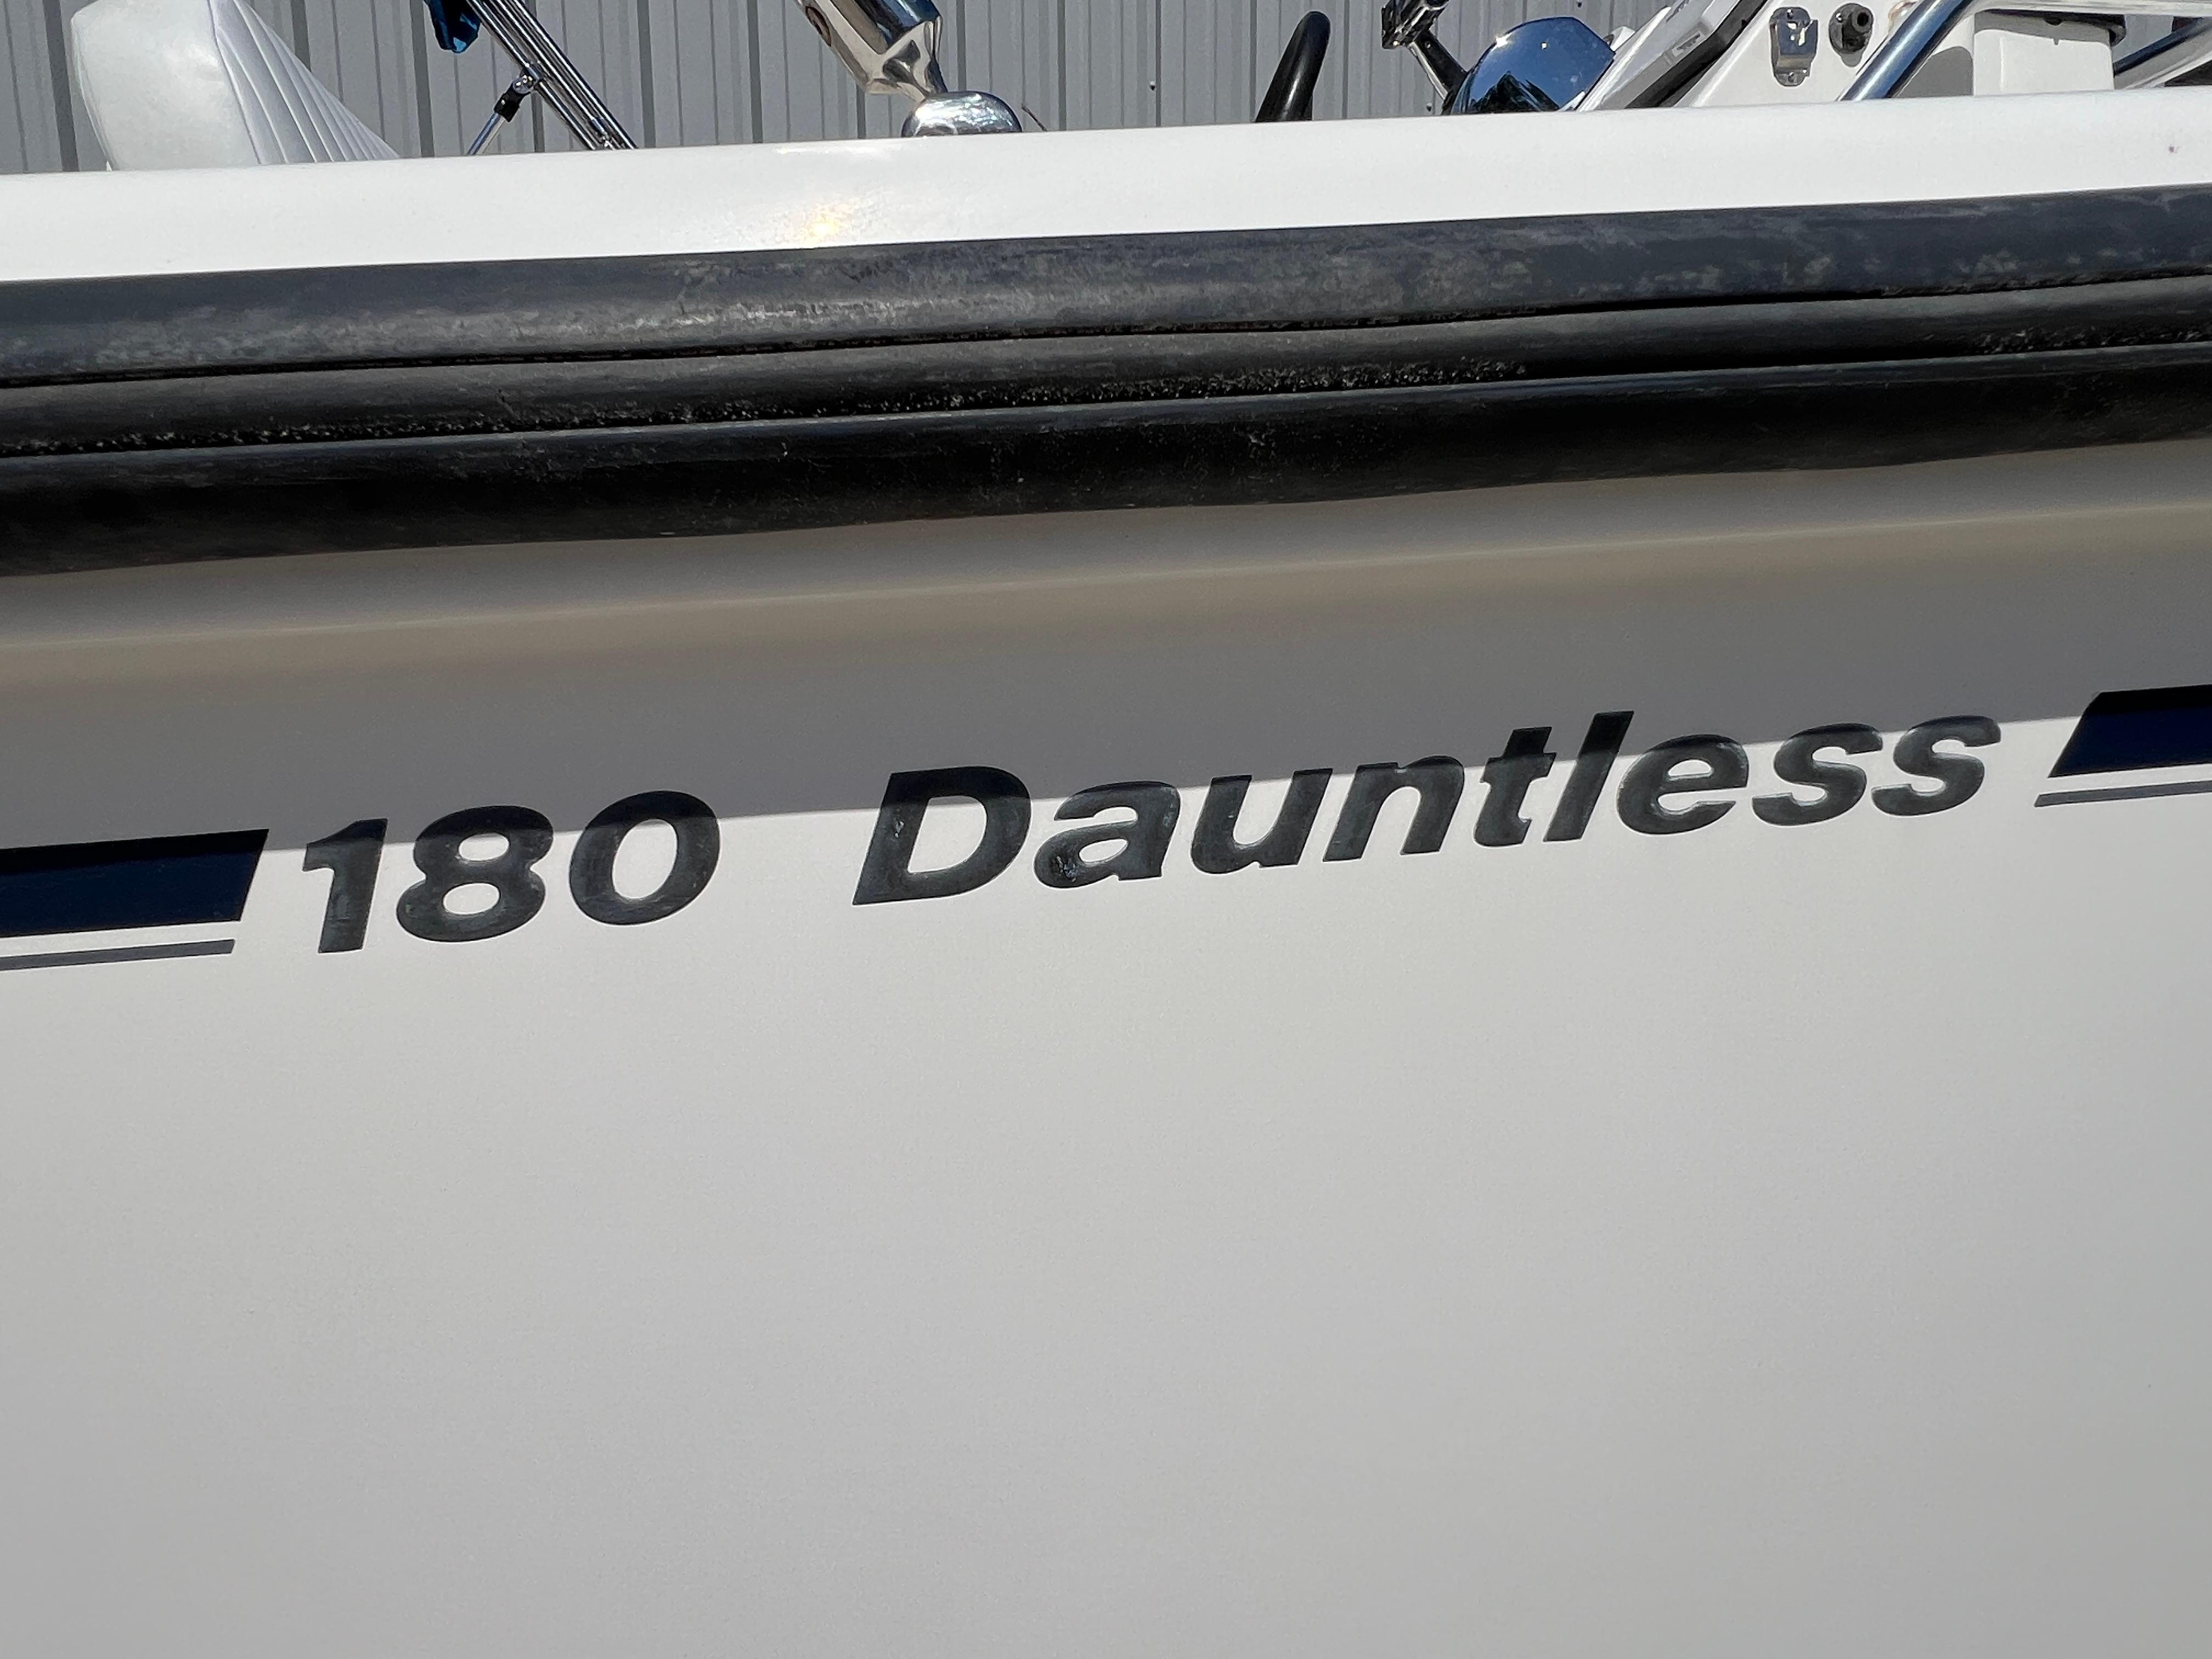 2006 Boston Whaler 180 Dauntless